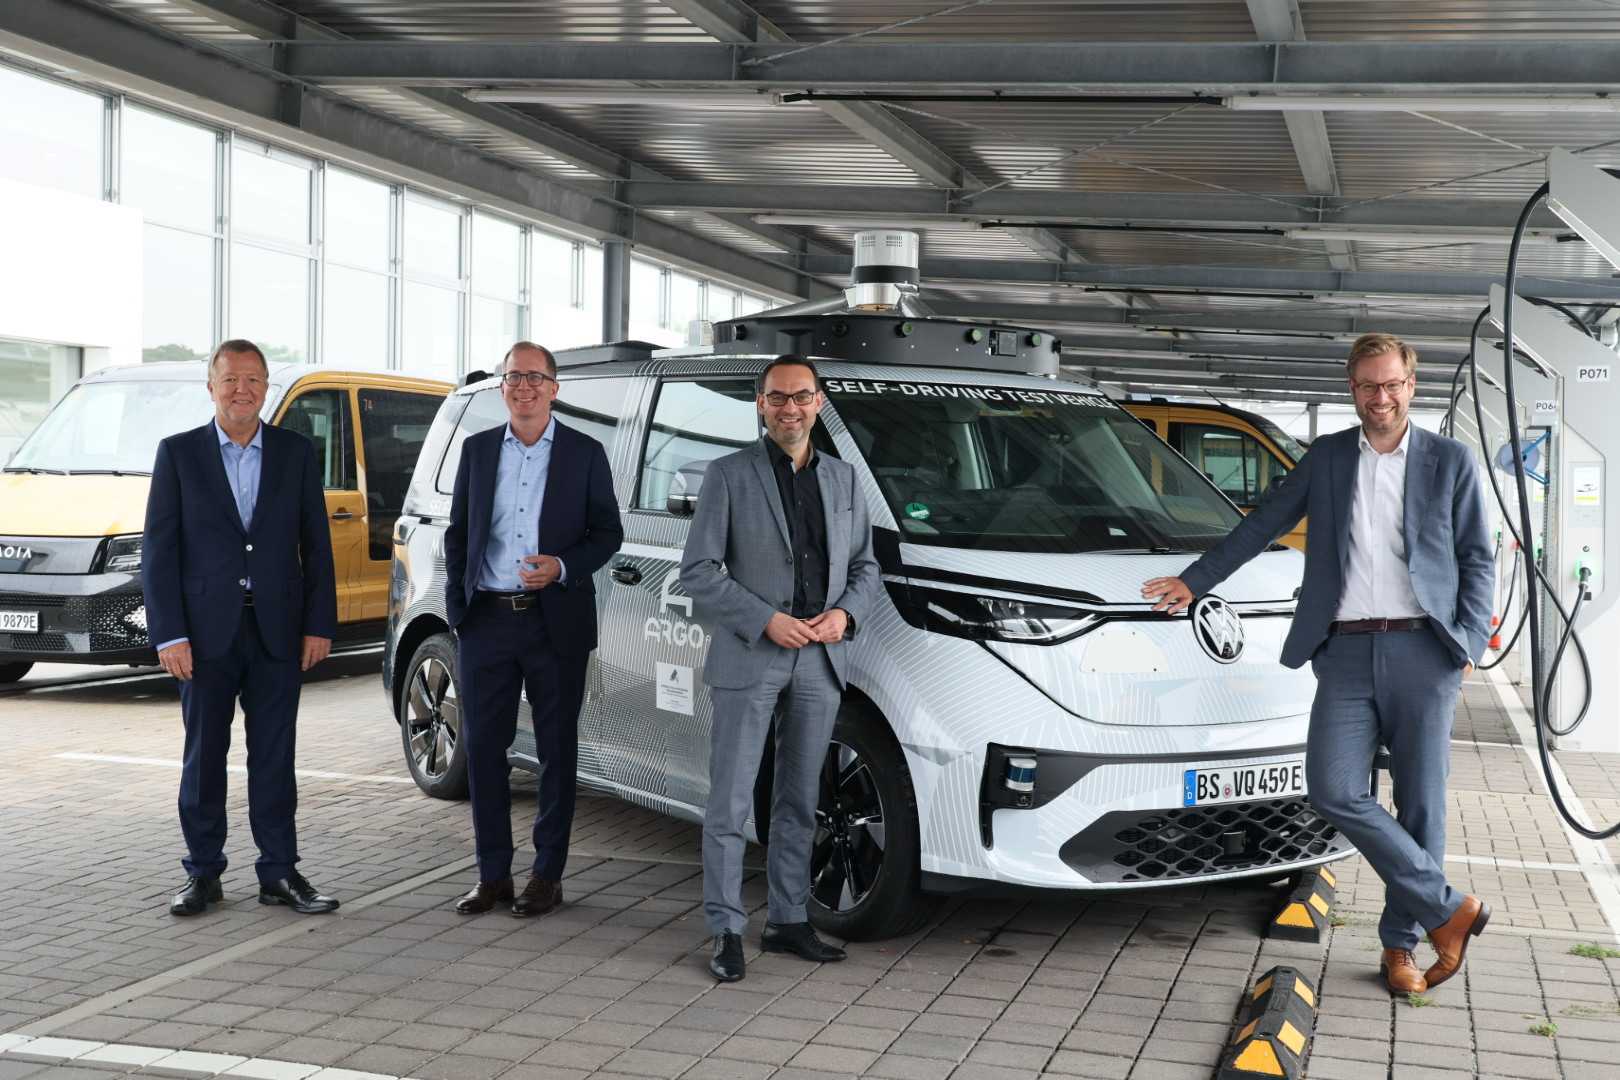 Präsentierten den neuen Prototyp fürs autonome Ridesharing: (von links) Reinhard Stolle (Vice President of Engineering Argo AI), Robert Henrich (CEO Moia), Christian Senger (Bereichsleiter Autonomes Fahren VW) und Verkehrssenator Anjes Tjarks (Grüne)